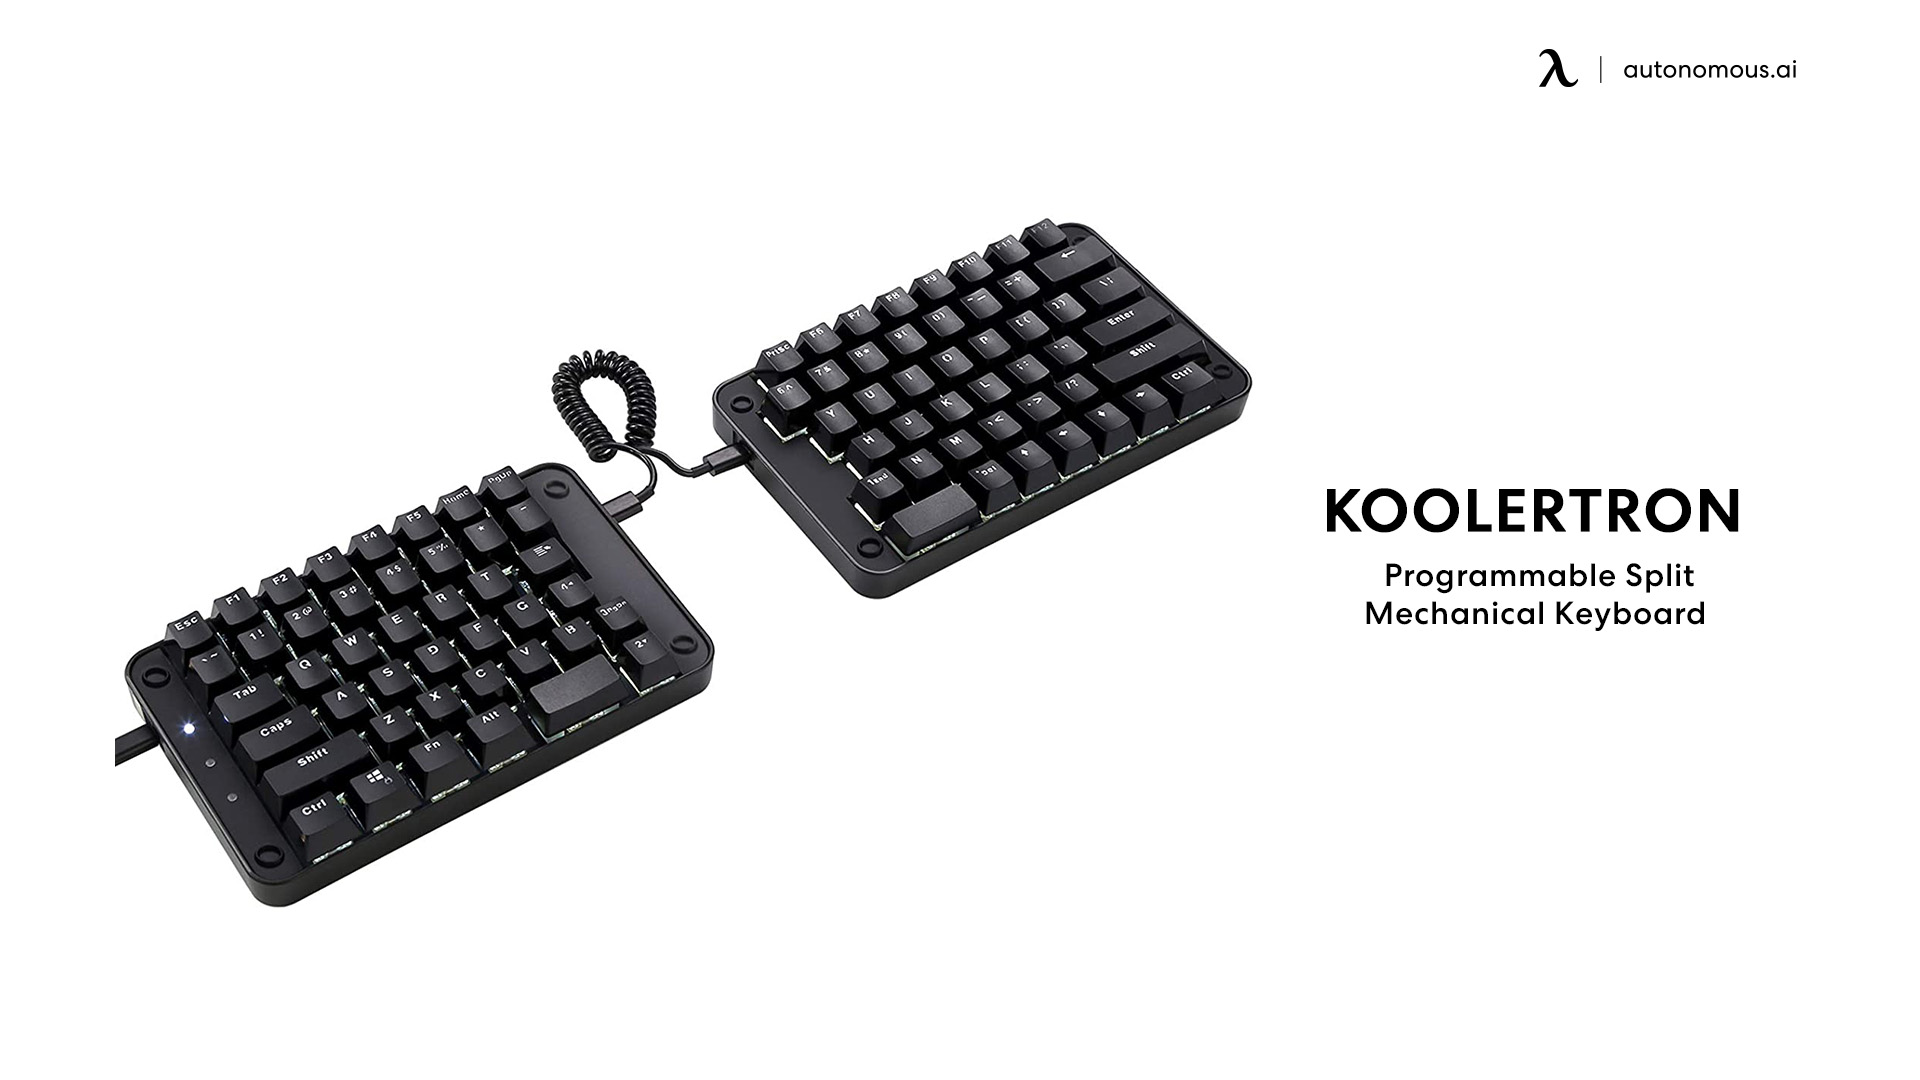 Programmable Split Mechanical Keyboard by Koolertron